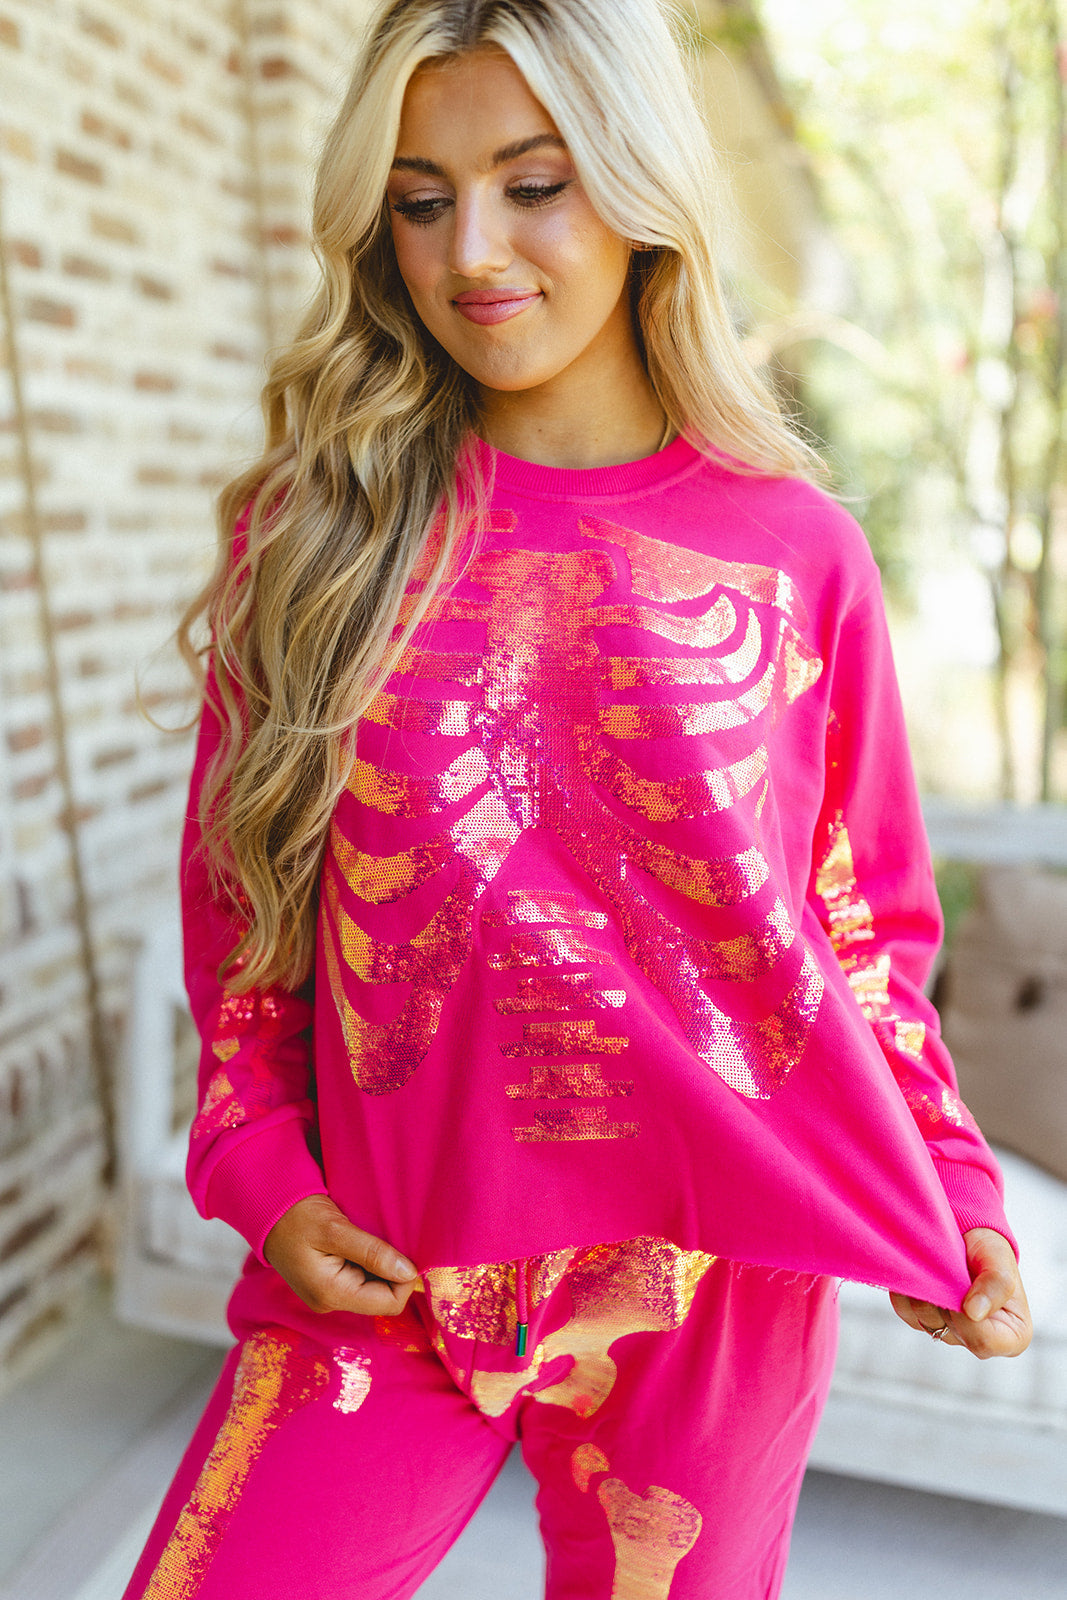 Queen Of Sparkles Magenta Sequin Skeleton Sweatshirt